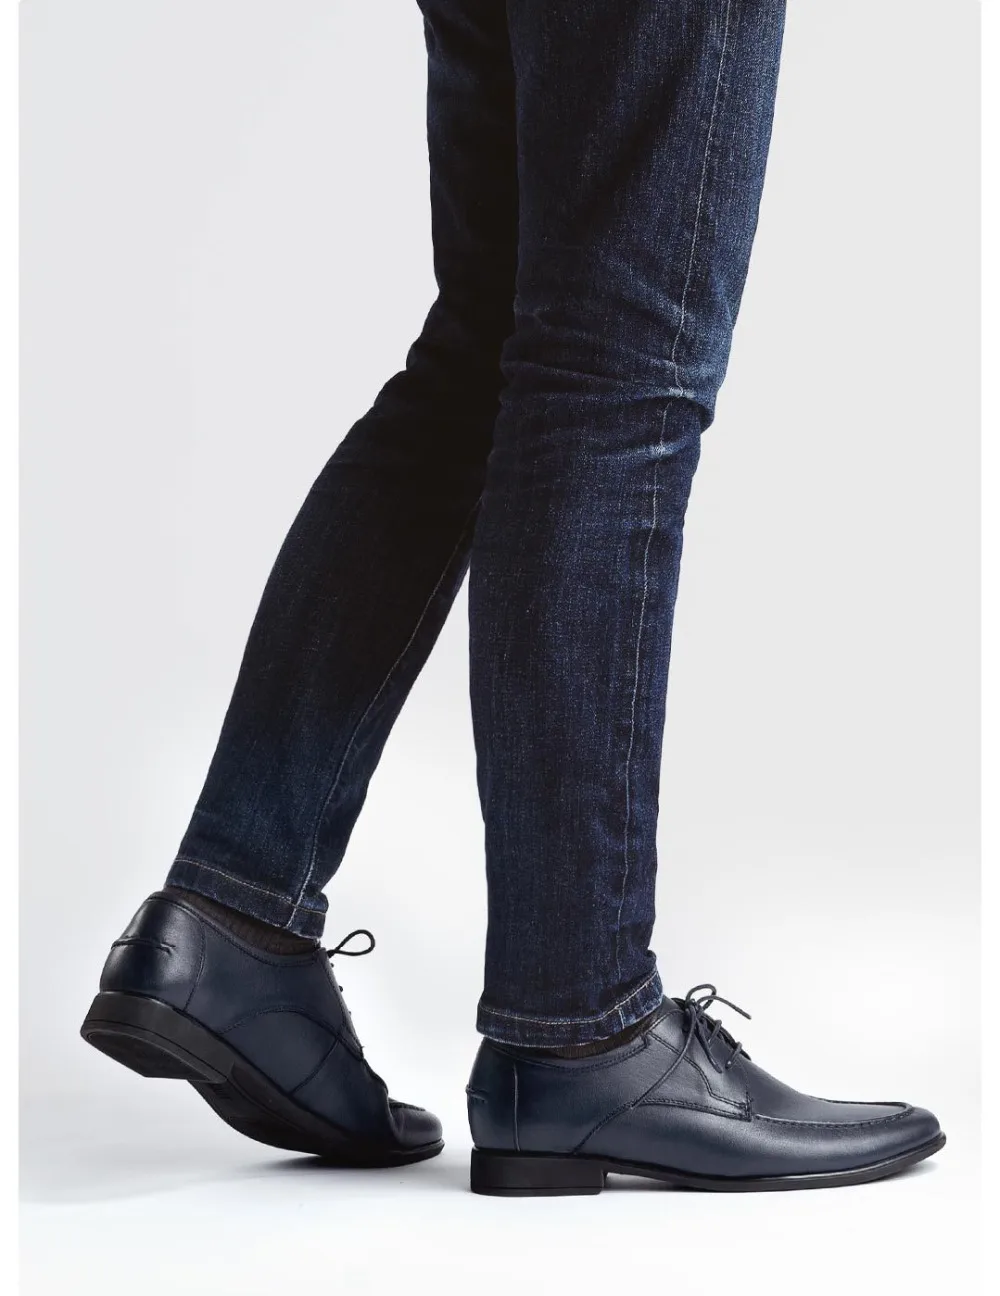 Xiaomi qimian/мужская повседневная кожаная обувь из мягкой кожи наппа; мягкая эластичная удобная подошва; Классические Мужские модельные туфли на плоской подошве